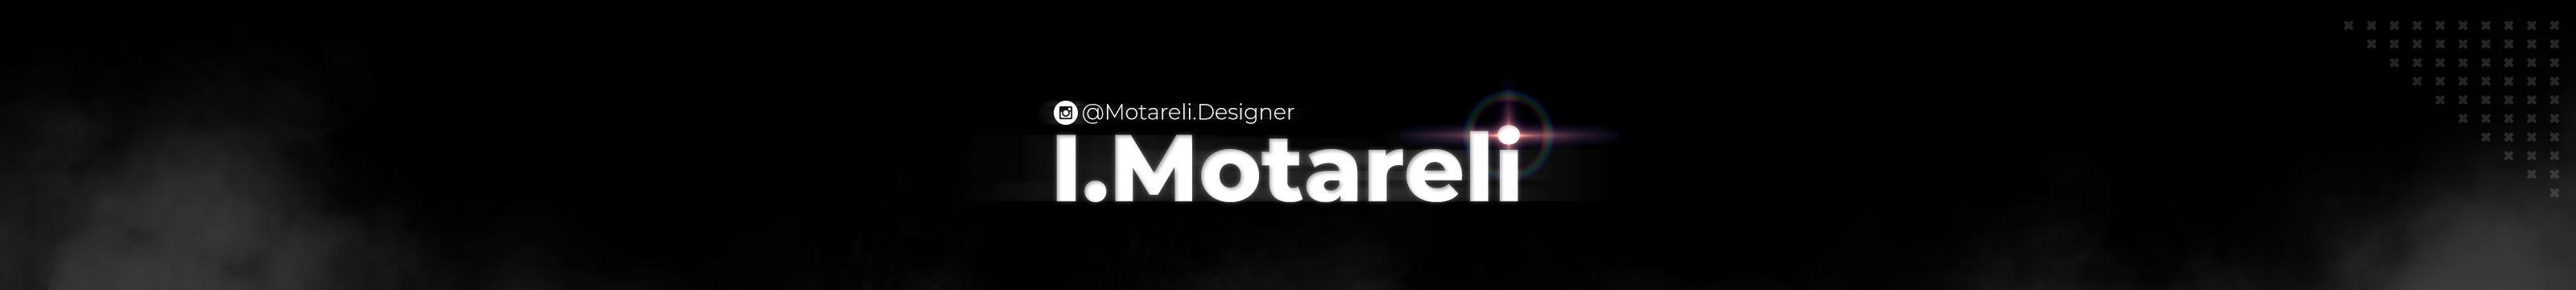 Profil-Banner von Igor Motareli